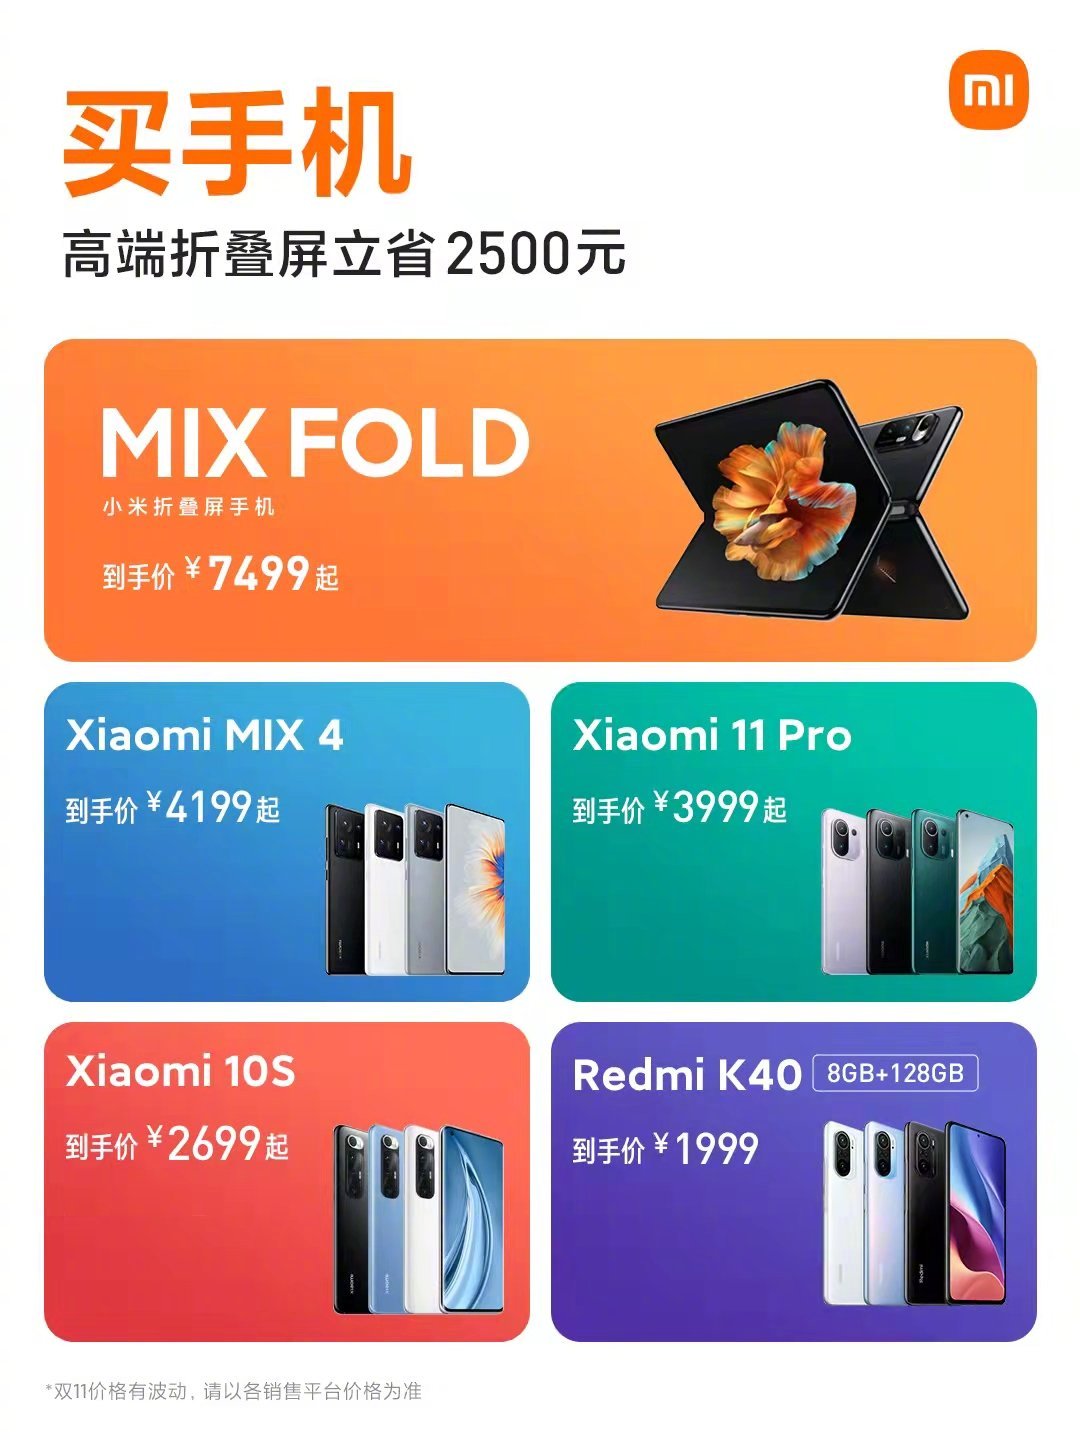 Сяоми 10s характеристики. Redmi 10s и Redmi 10 Prime. Где самые большие скидки на смартфоны Xiaomi. Расширение памяти редми